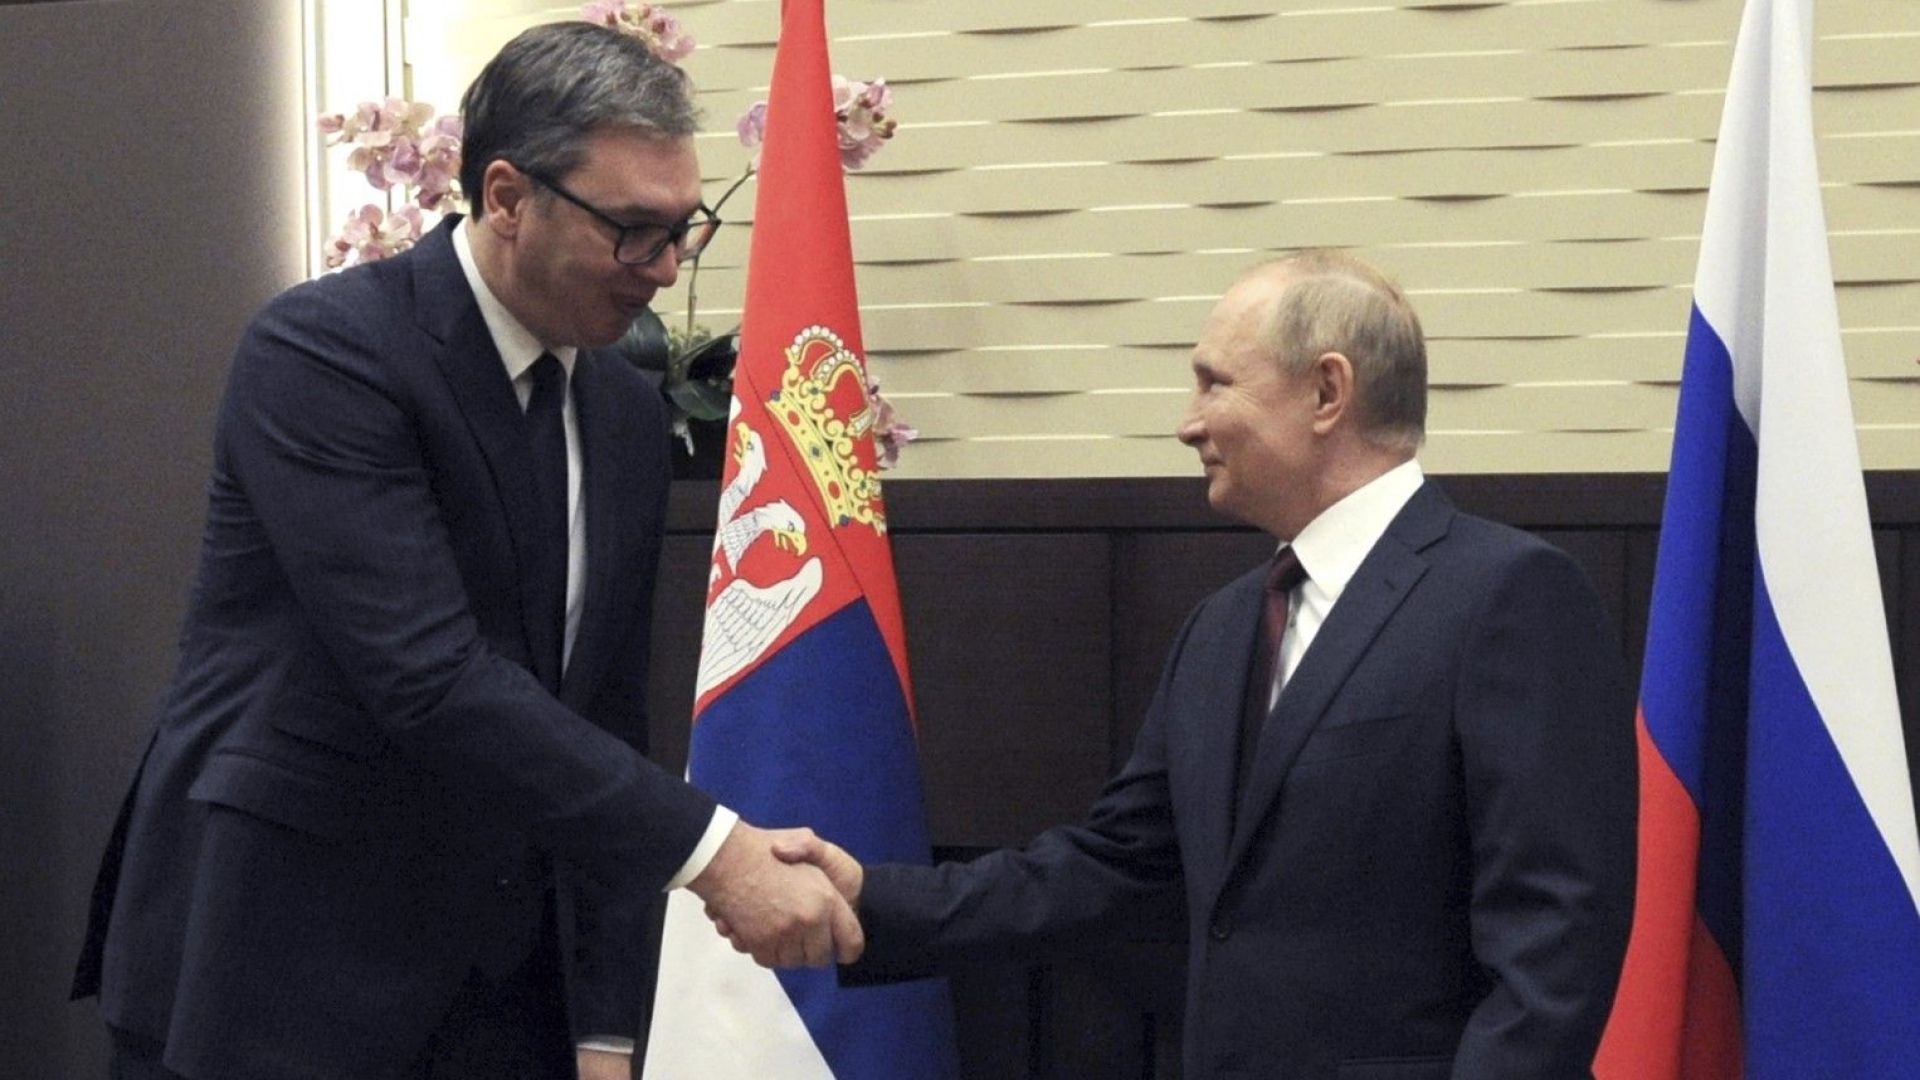 Александър Вучич: Санкциите са аморални, а Русия винаги ни е подкрепяла